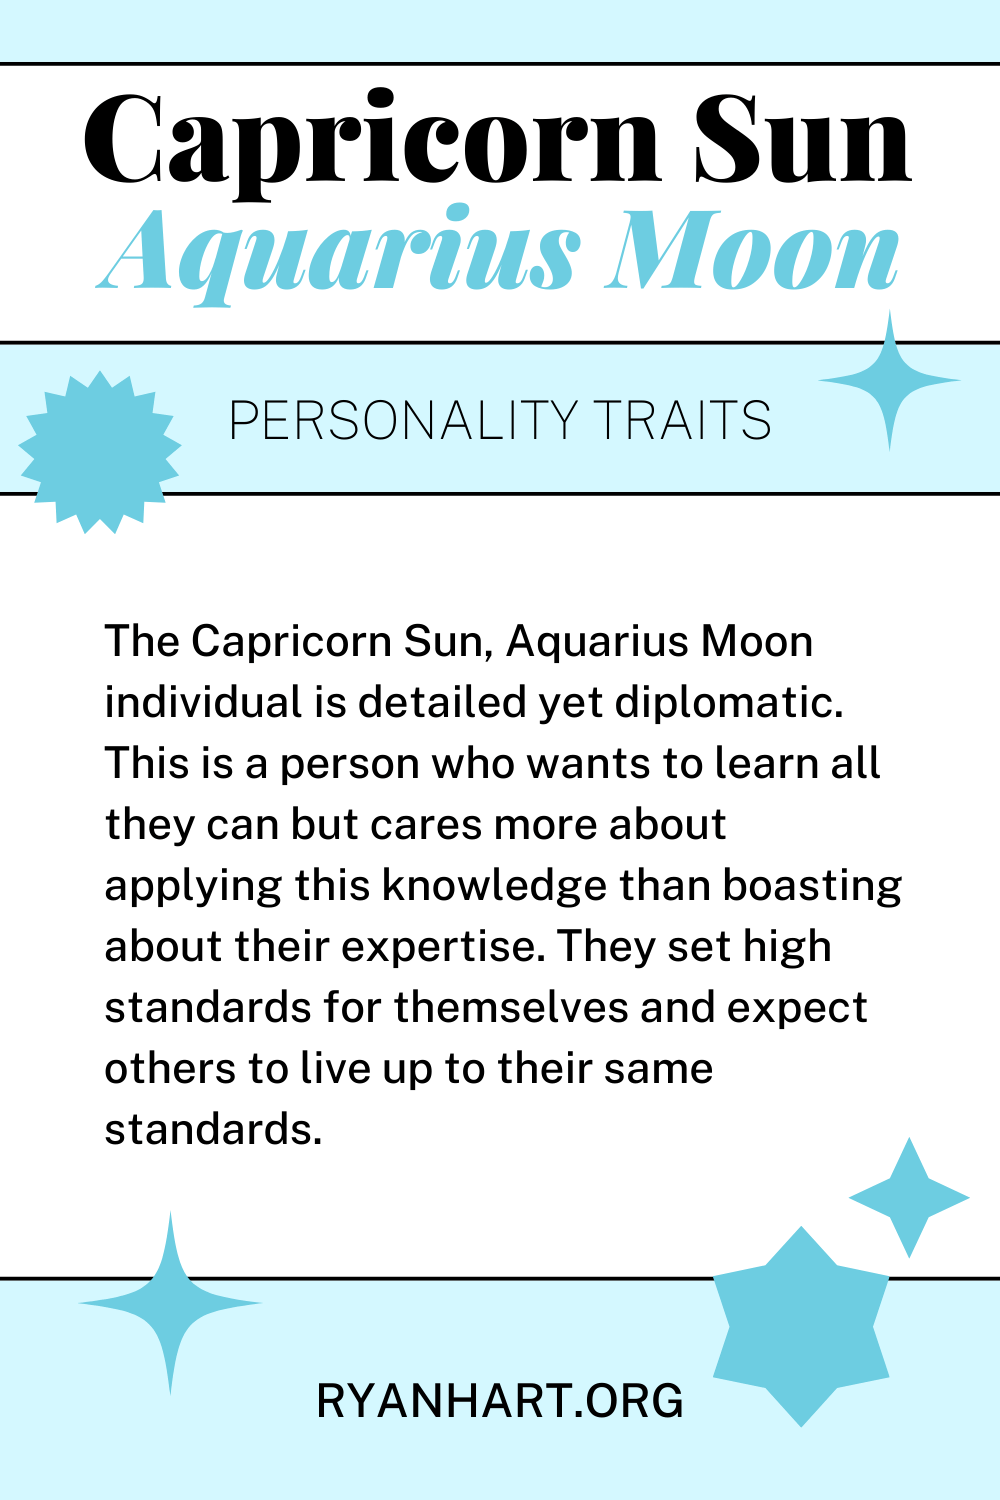  ចរិតលក្ខណៈរបស់ Capricorn Sun Aquarius Moon